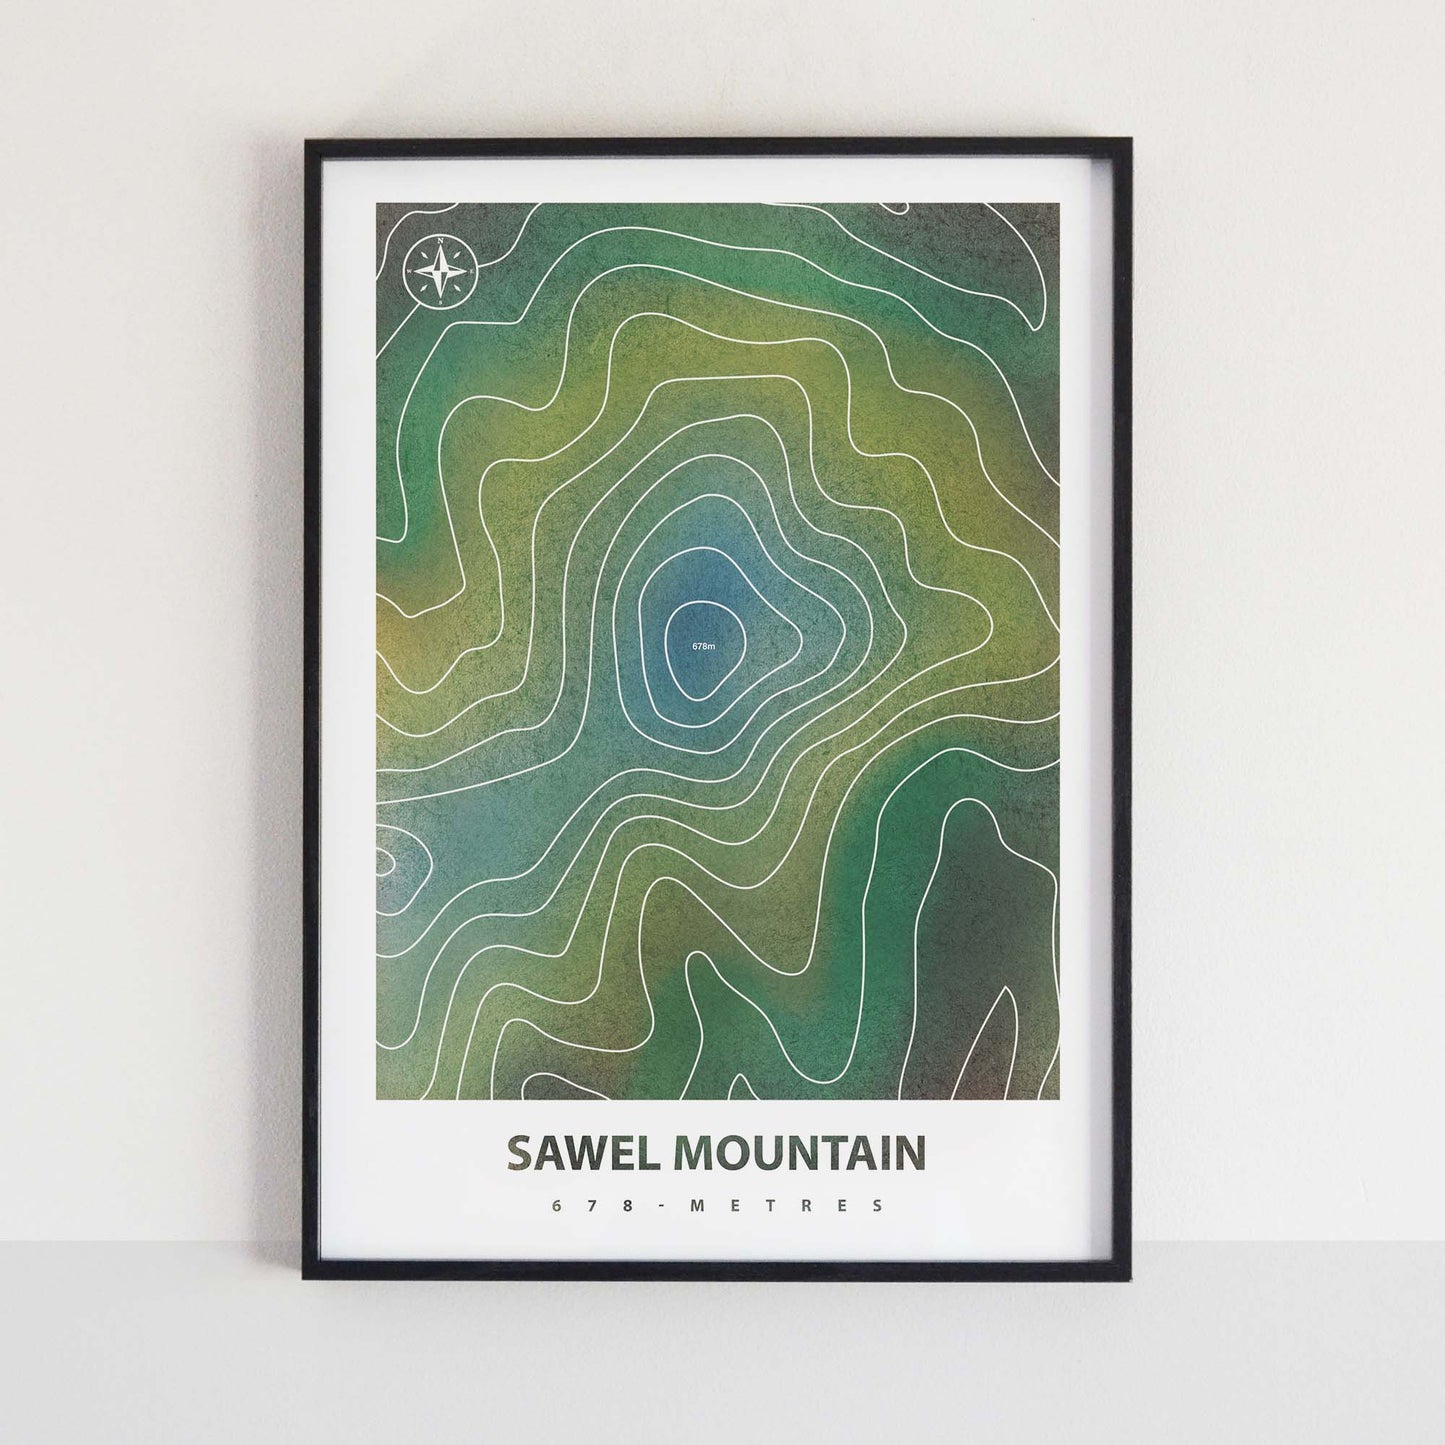 Sawel Mountain Peaks